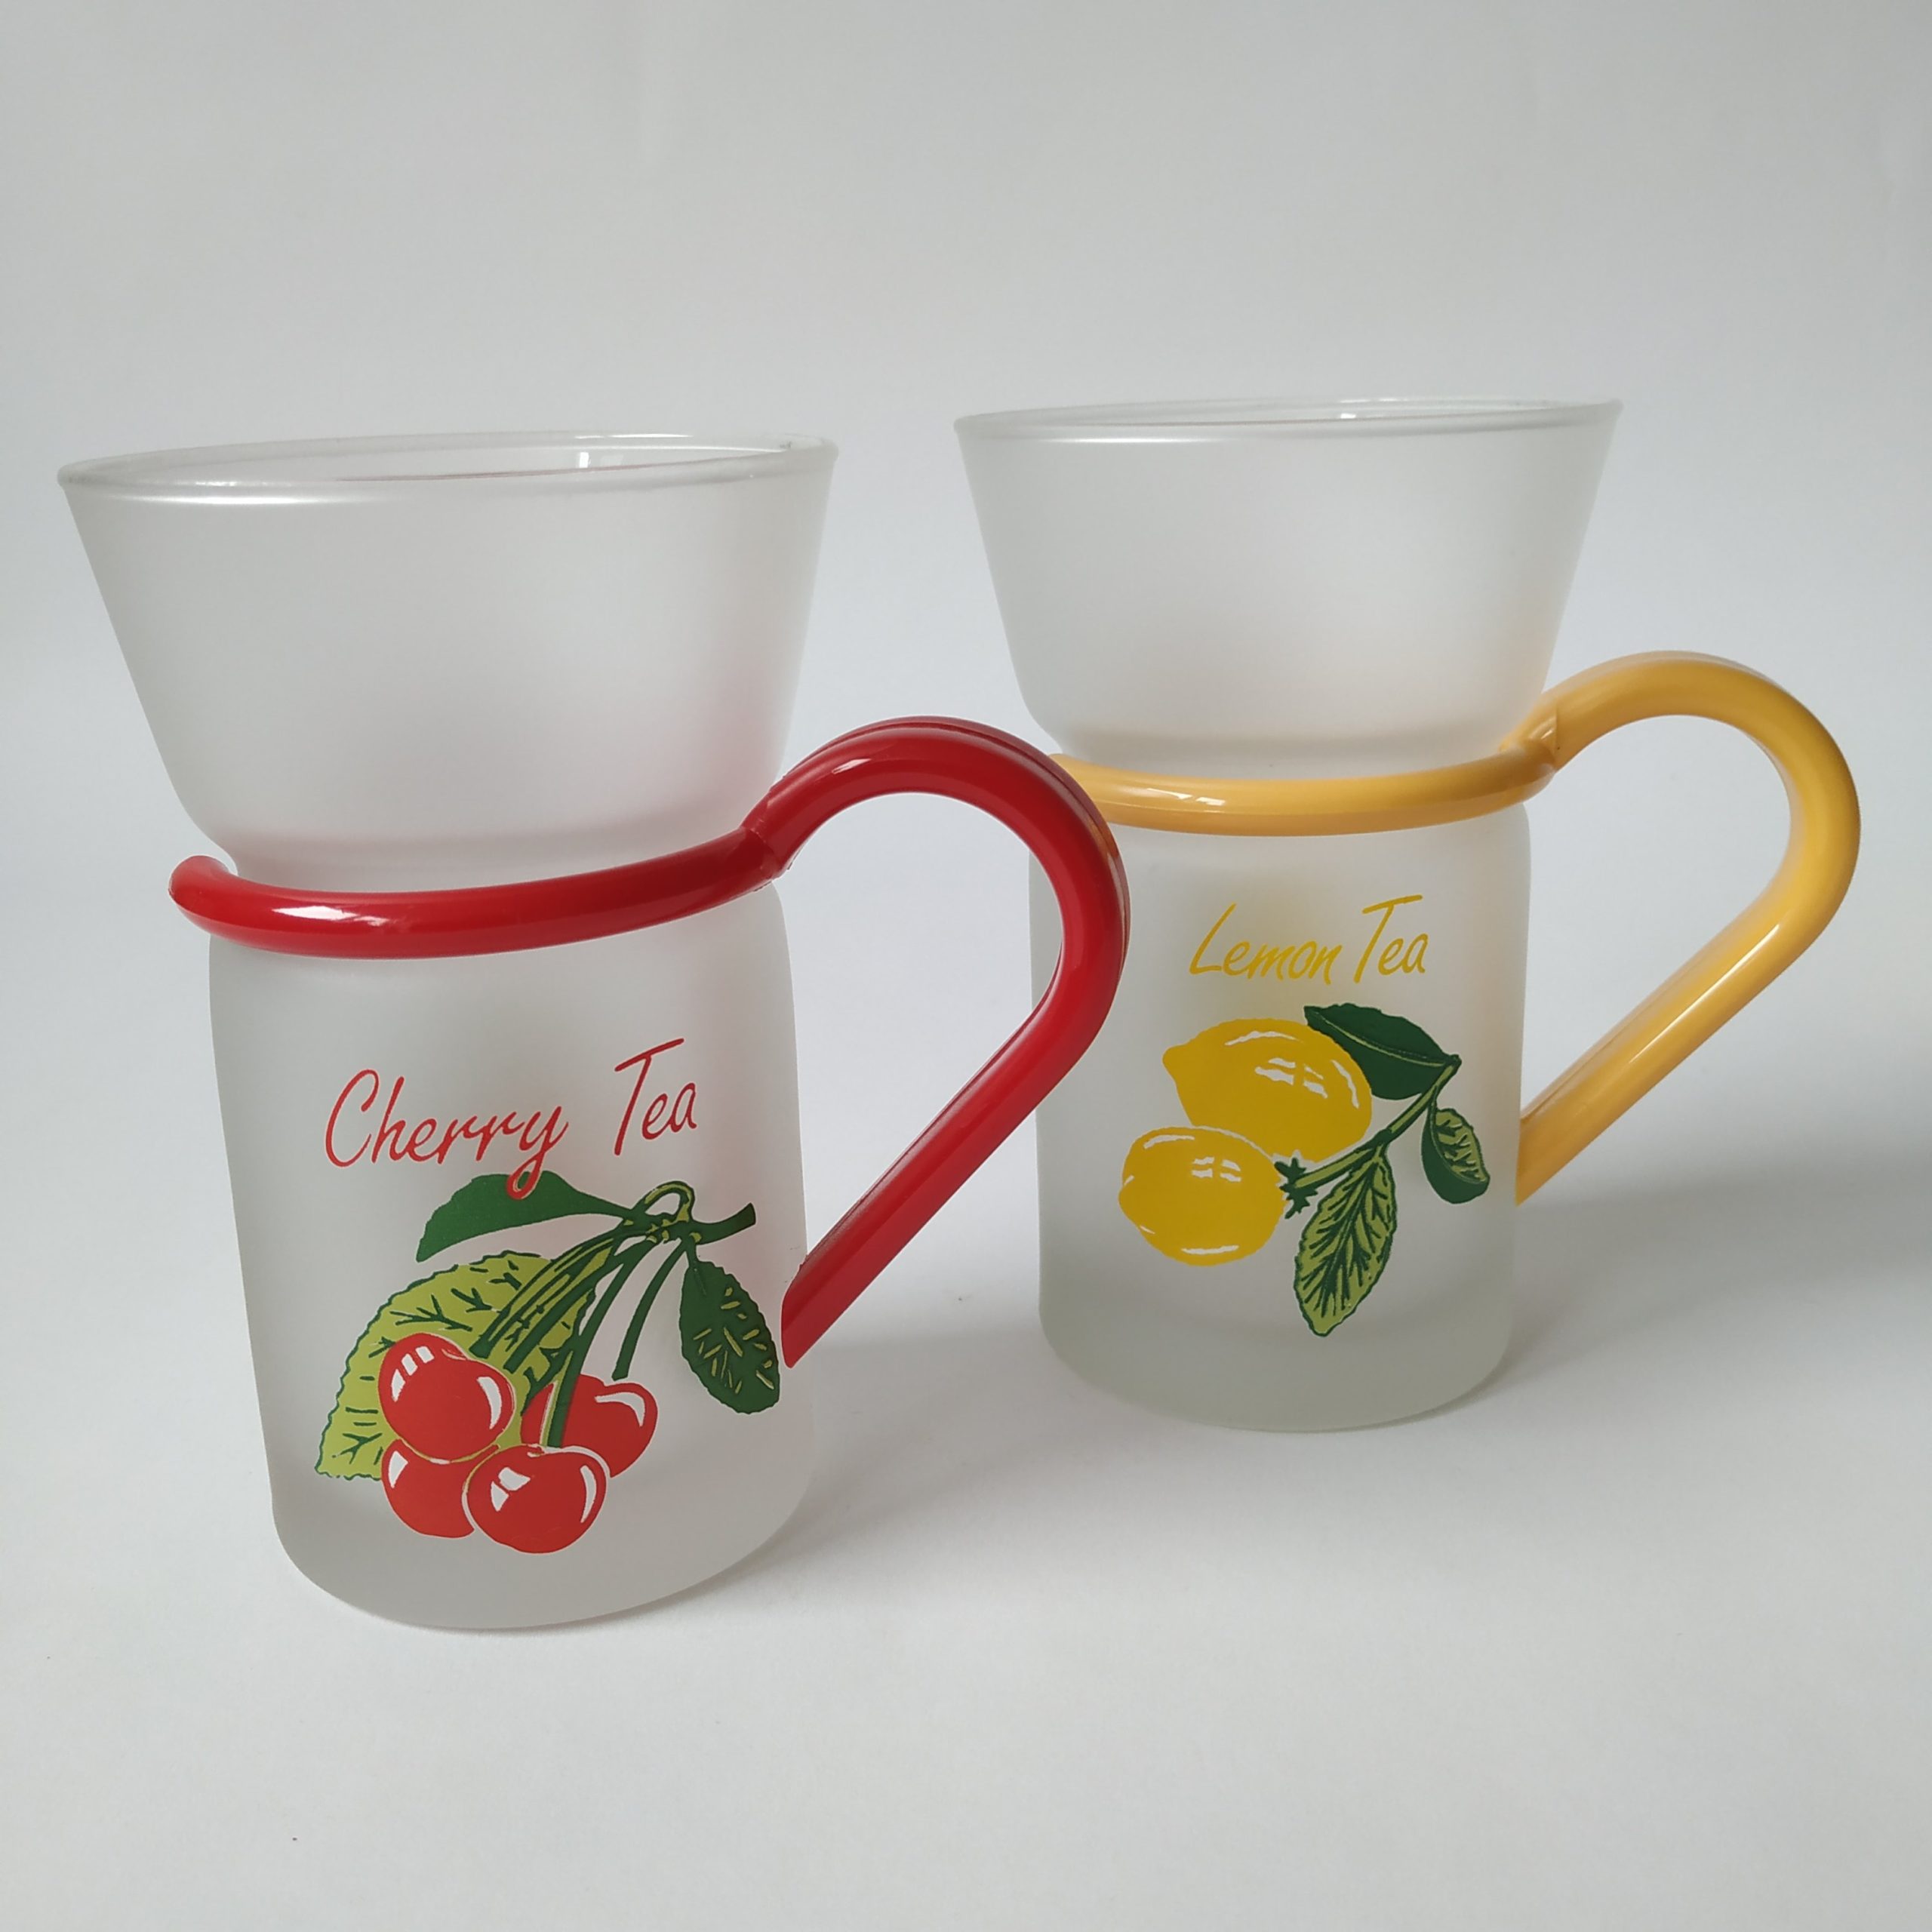 Theeglazen Inspiration – Cherry Tea en Lemon Tea – inhoud 200 ml (1)